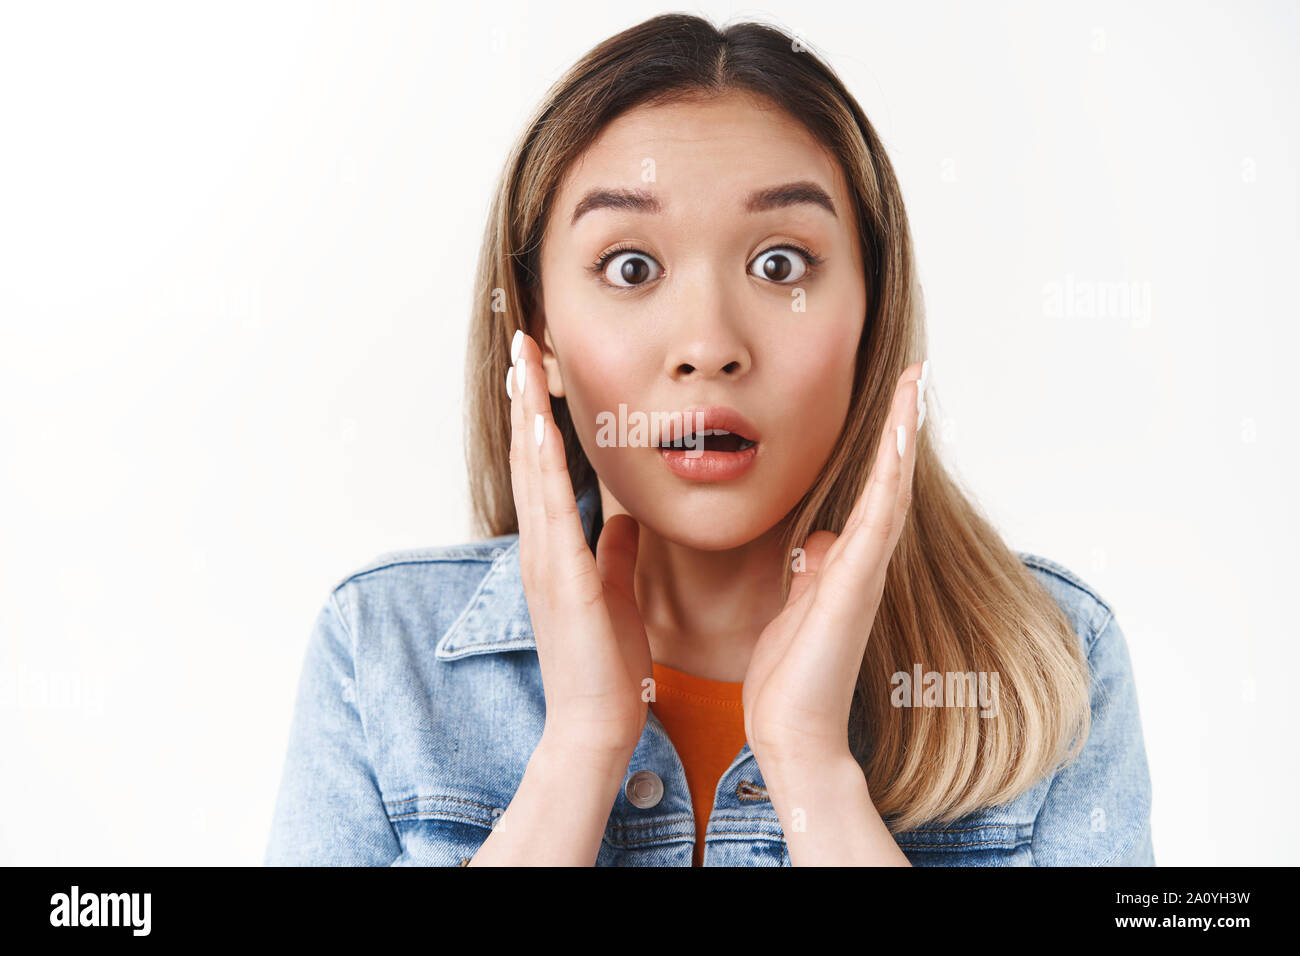 Headshot schockiert überrascht blond asiatische Mädchen pop Augen starren Kamera beeindruckt fragte sich berühren Sie mit offenem Mund nach Luft schnappend ambushed unerwartete Ständigen gefangen Stockfoto